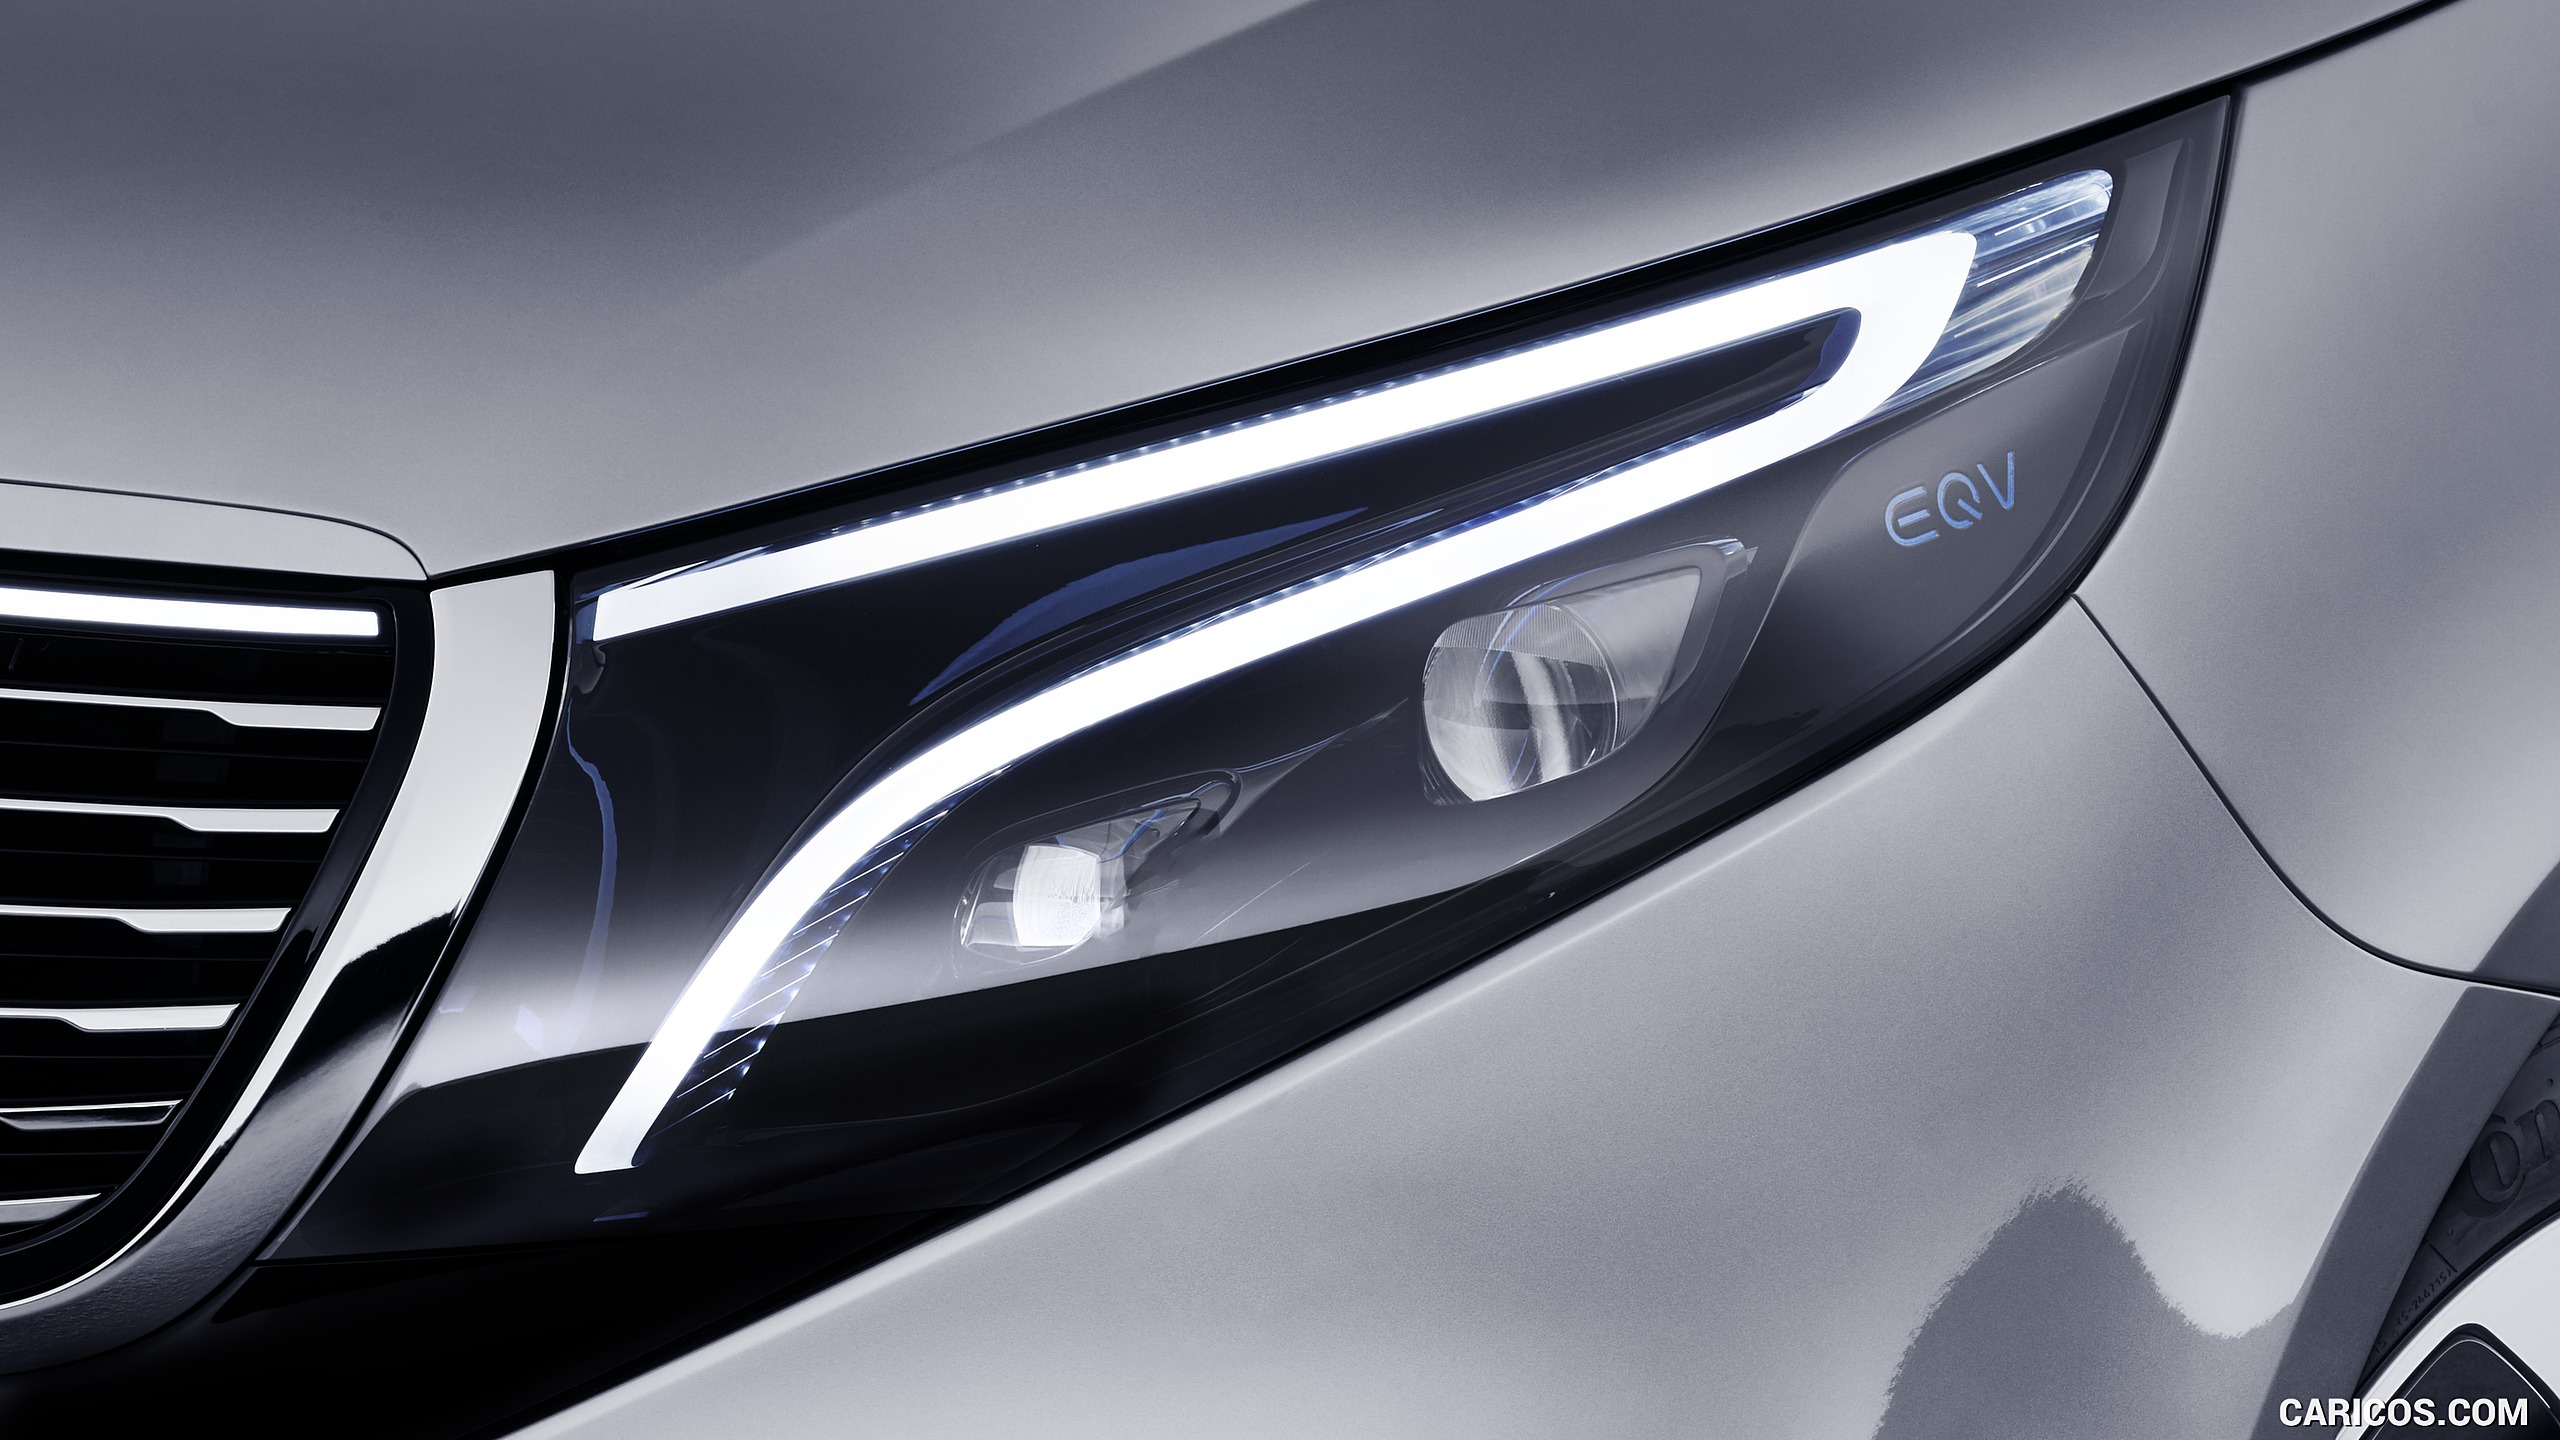 2019 Mercedes-Benz Concept EQV - Headlight, #8 of 34